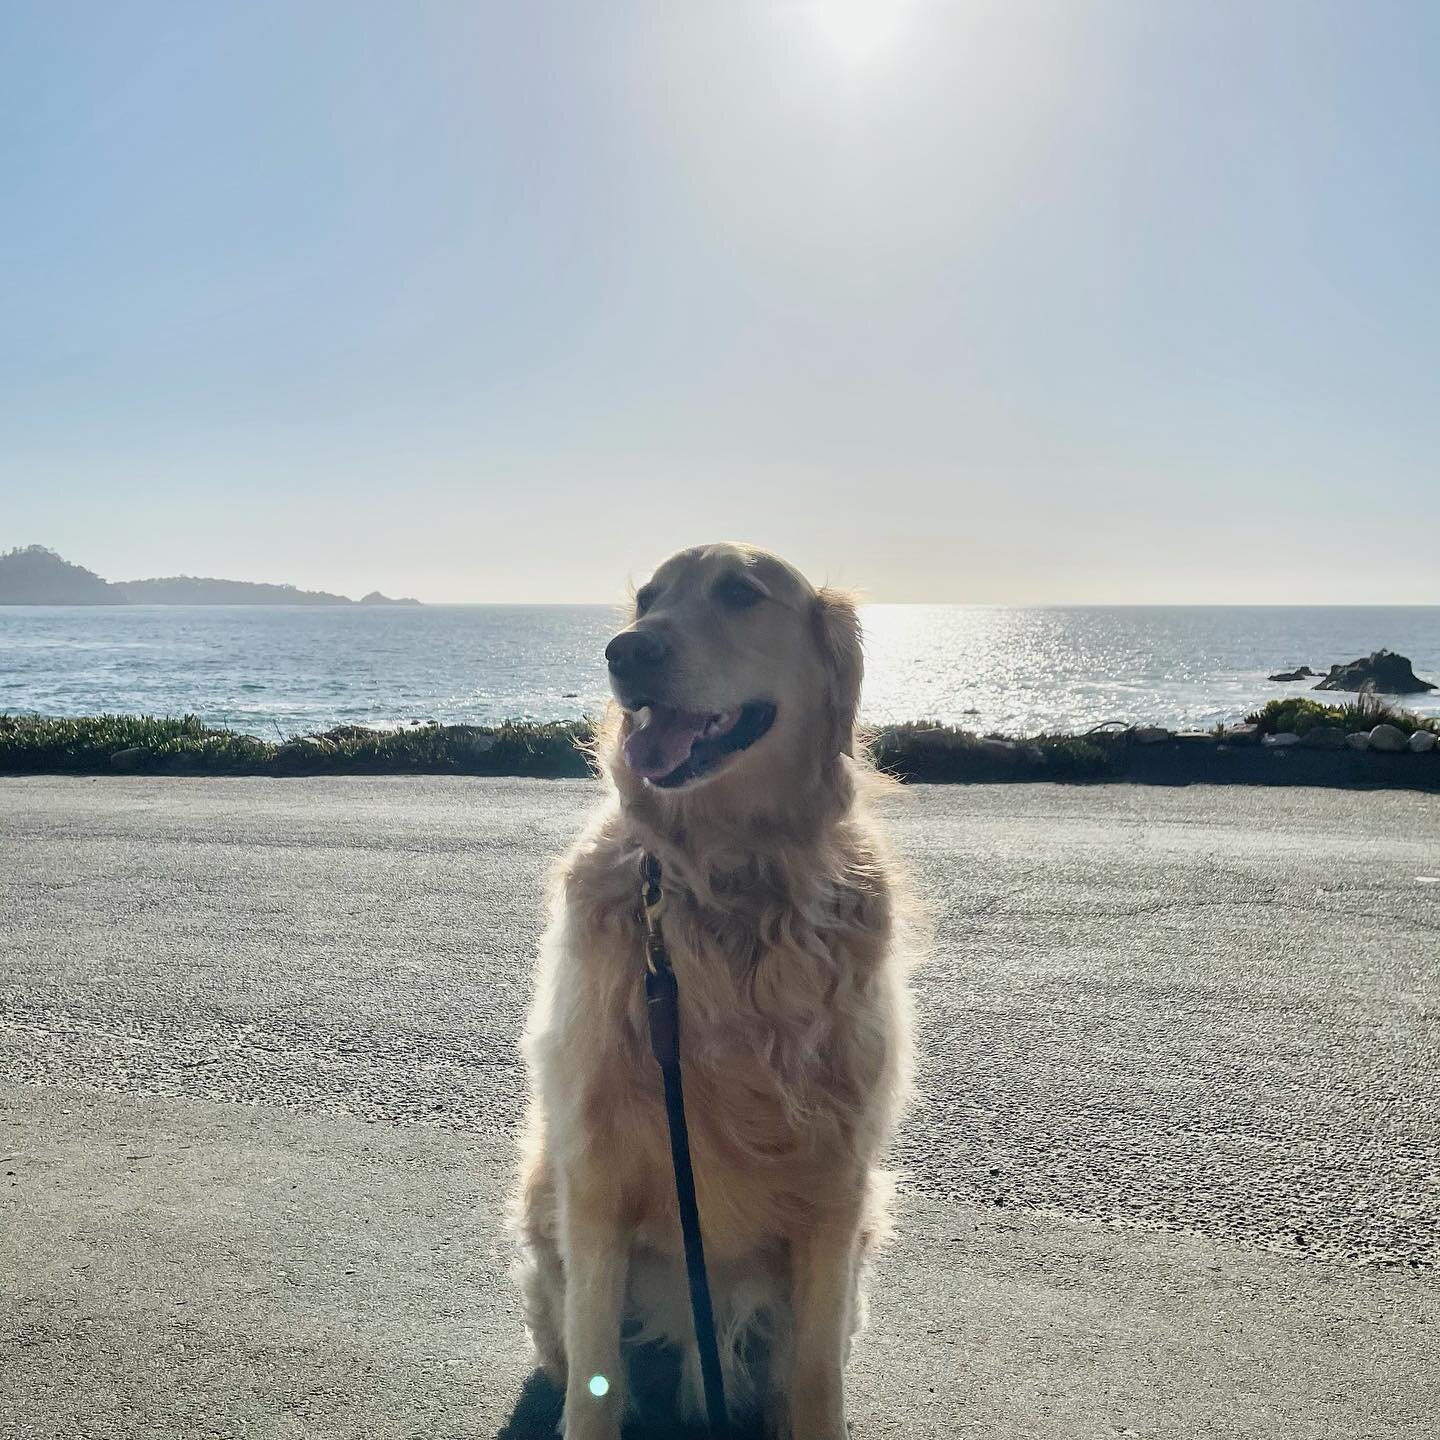 Leroy requested a walk by the ocean today 🌊 #carmelbythesea #westcoastcains #westcoast #pacificocean #goldenretriever #goldensofinstagram #leroycain